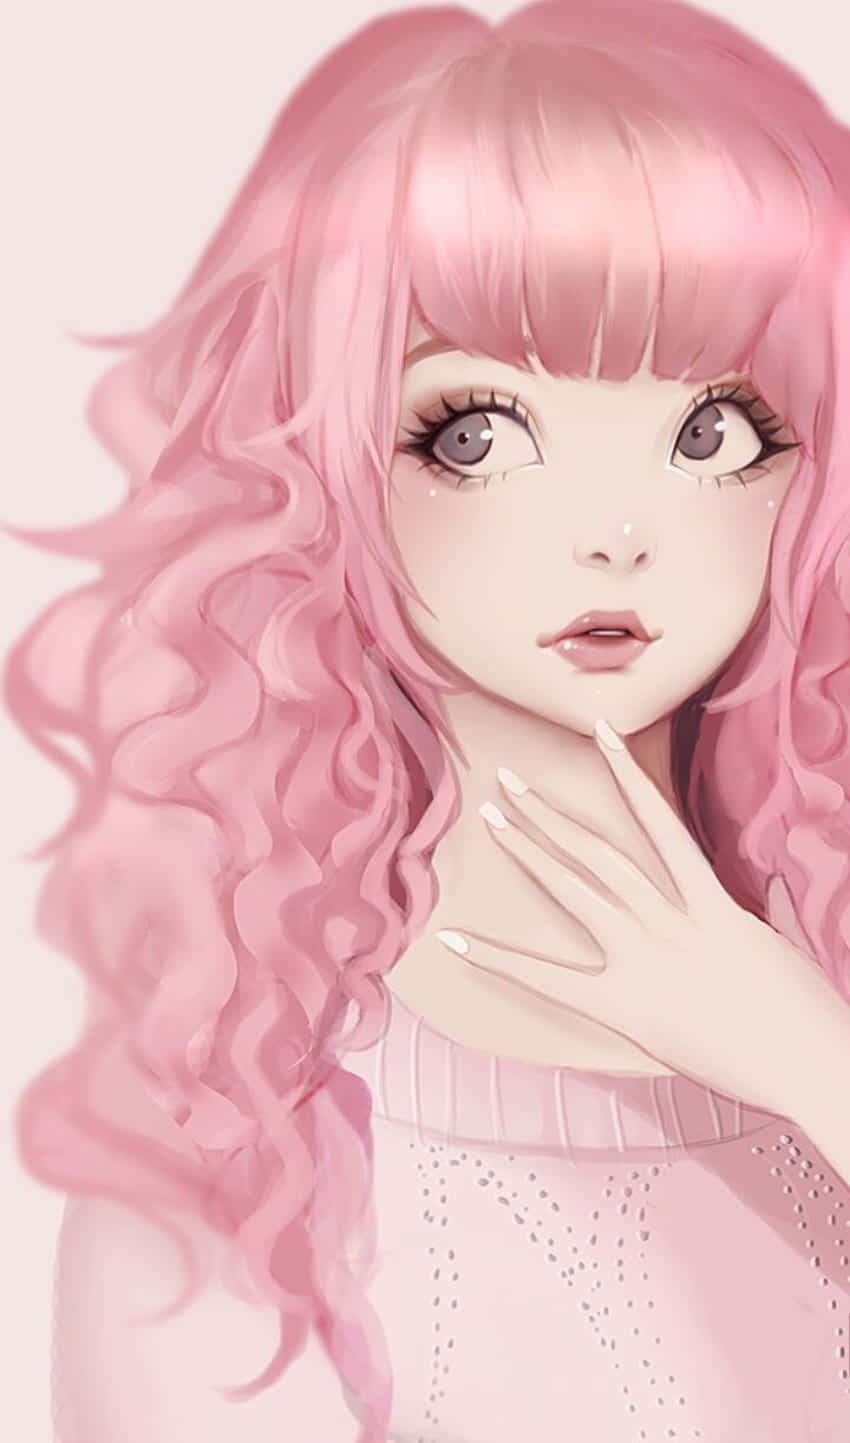 Pastel Pink Aesthetic Anime Looking Sideways Wallpaper